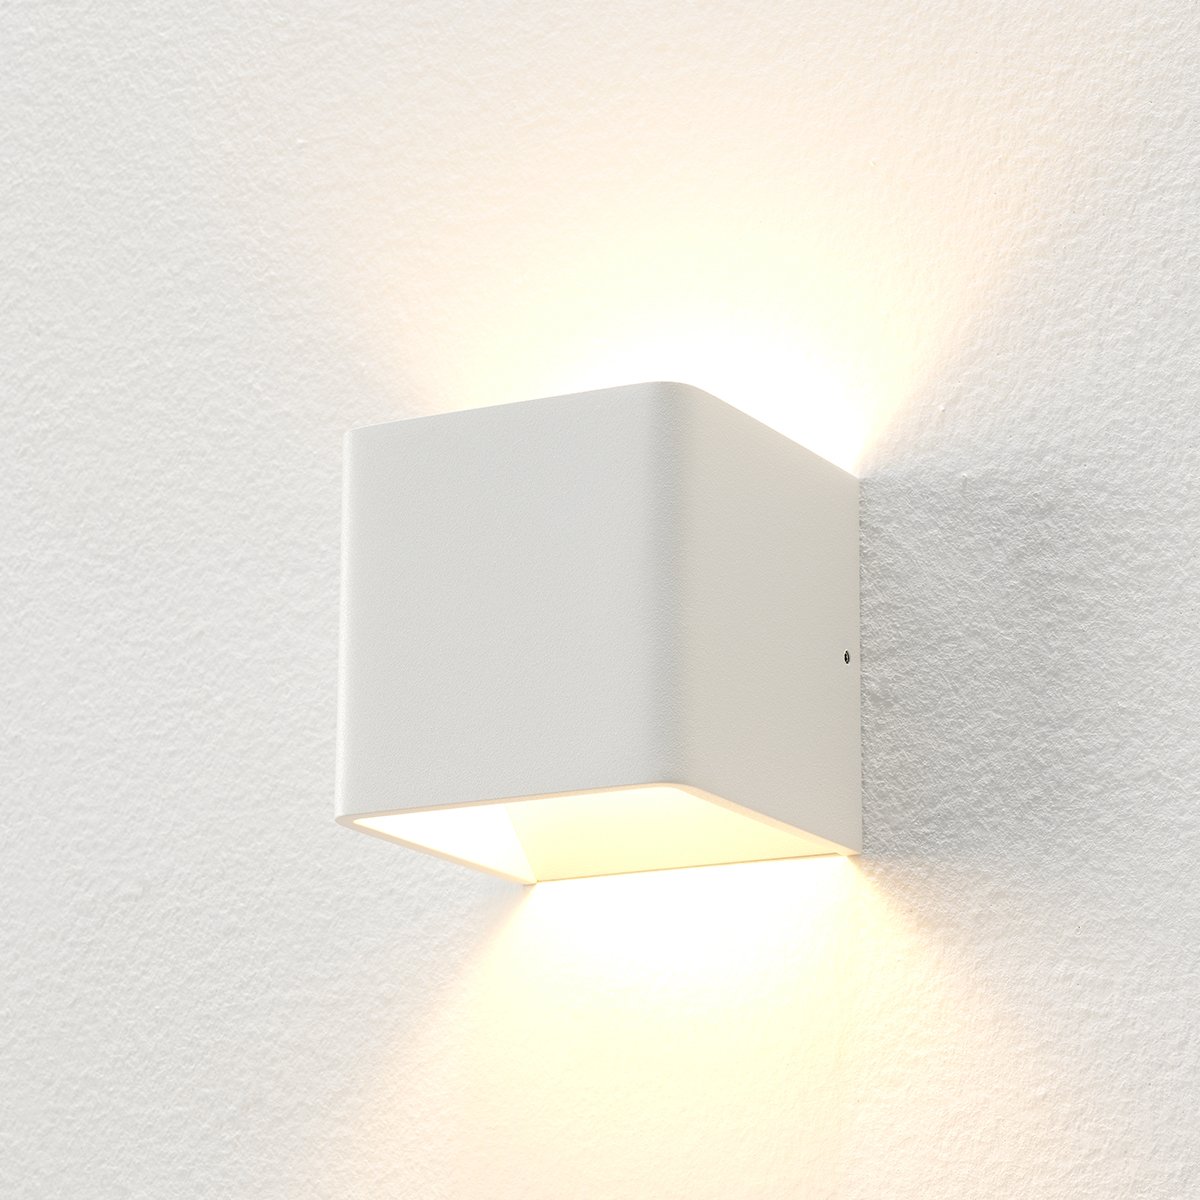 Væglampe led up down hvid Carré - 10 cm